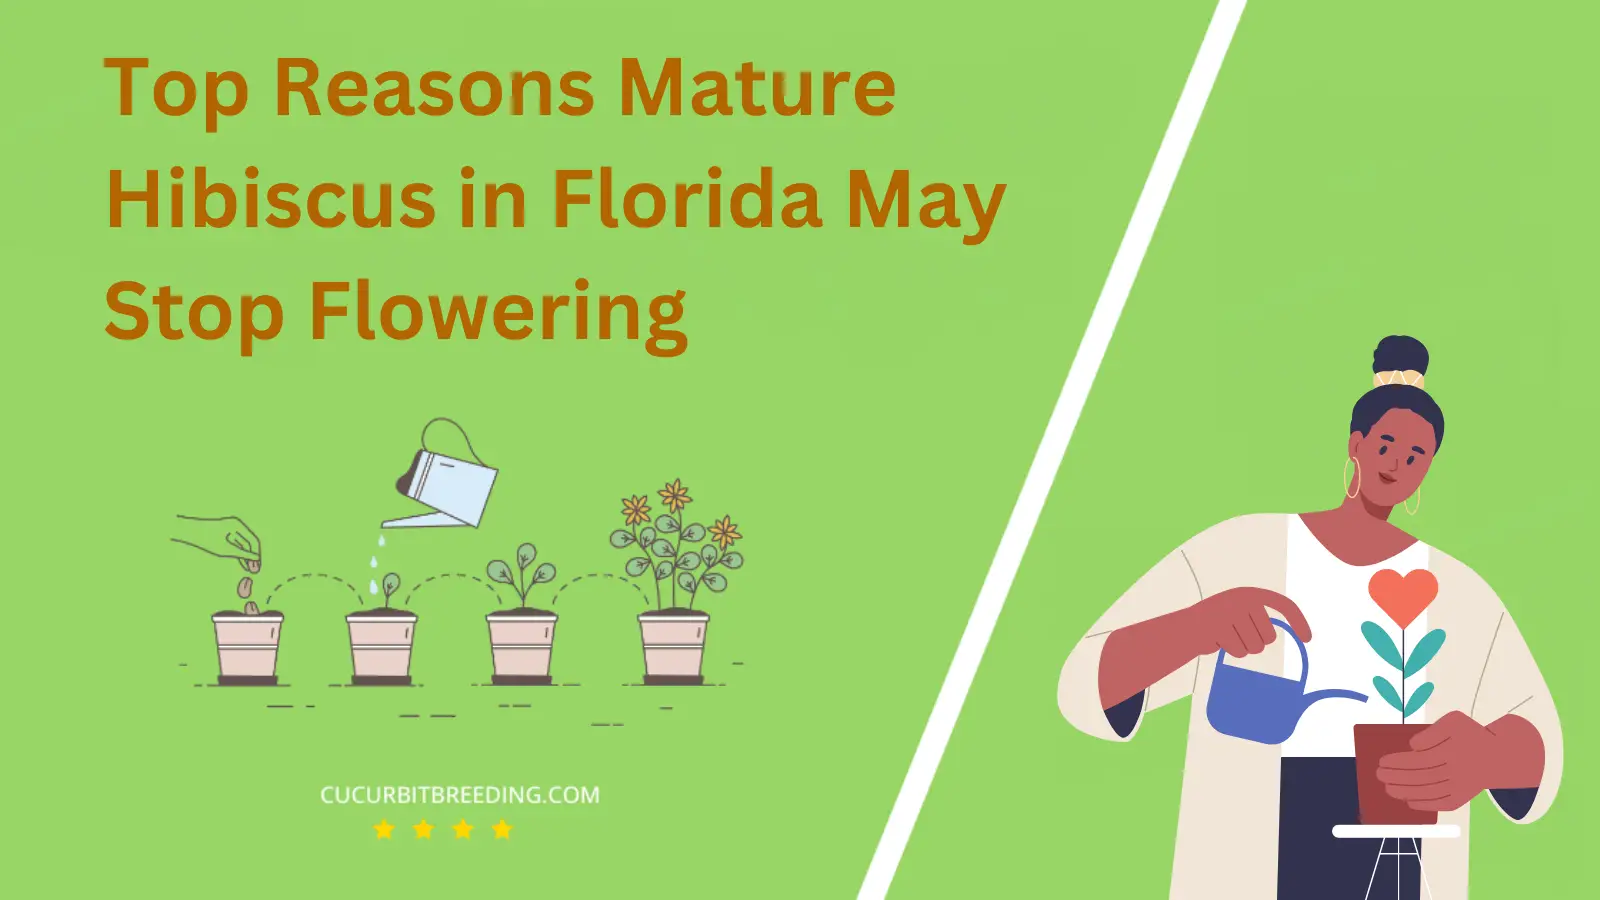 Top Reasons Mature Hibiscus in Florida May Stop Flowering